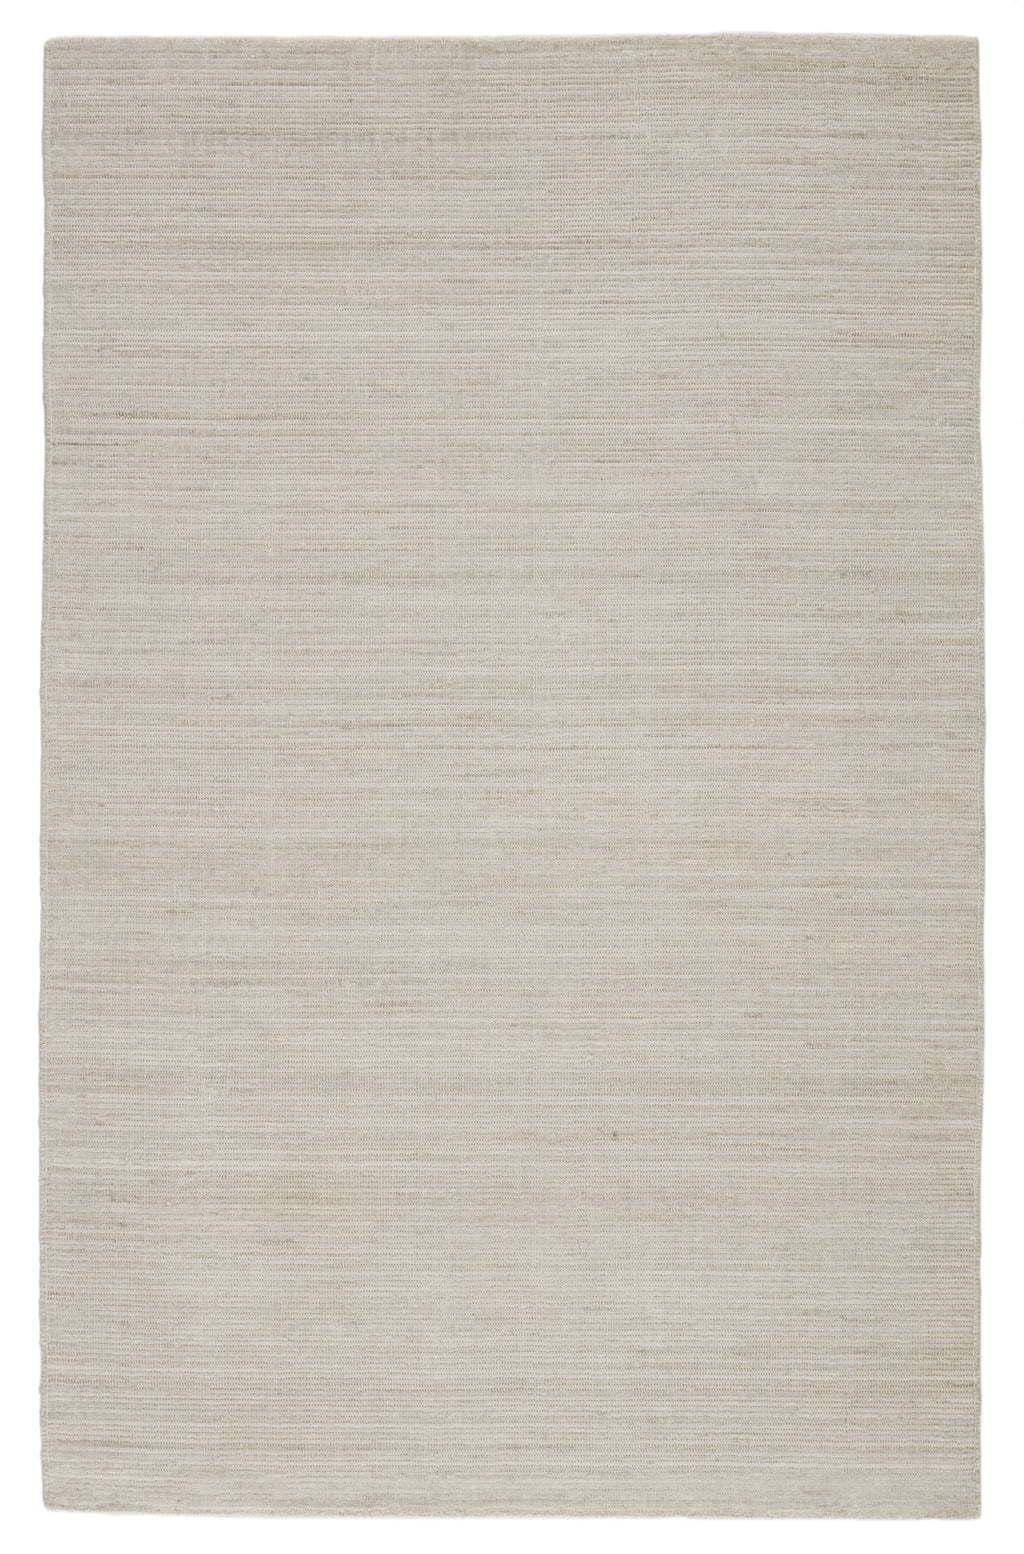 danan handmade solid ivory light gray rug by jaipur living 1